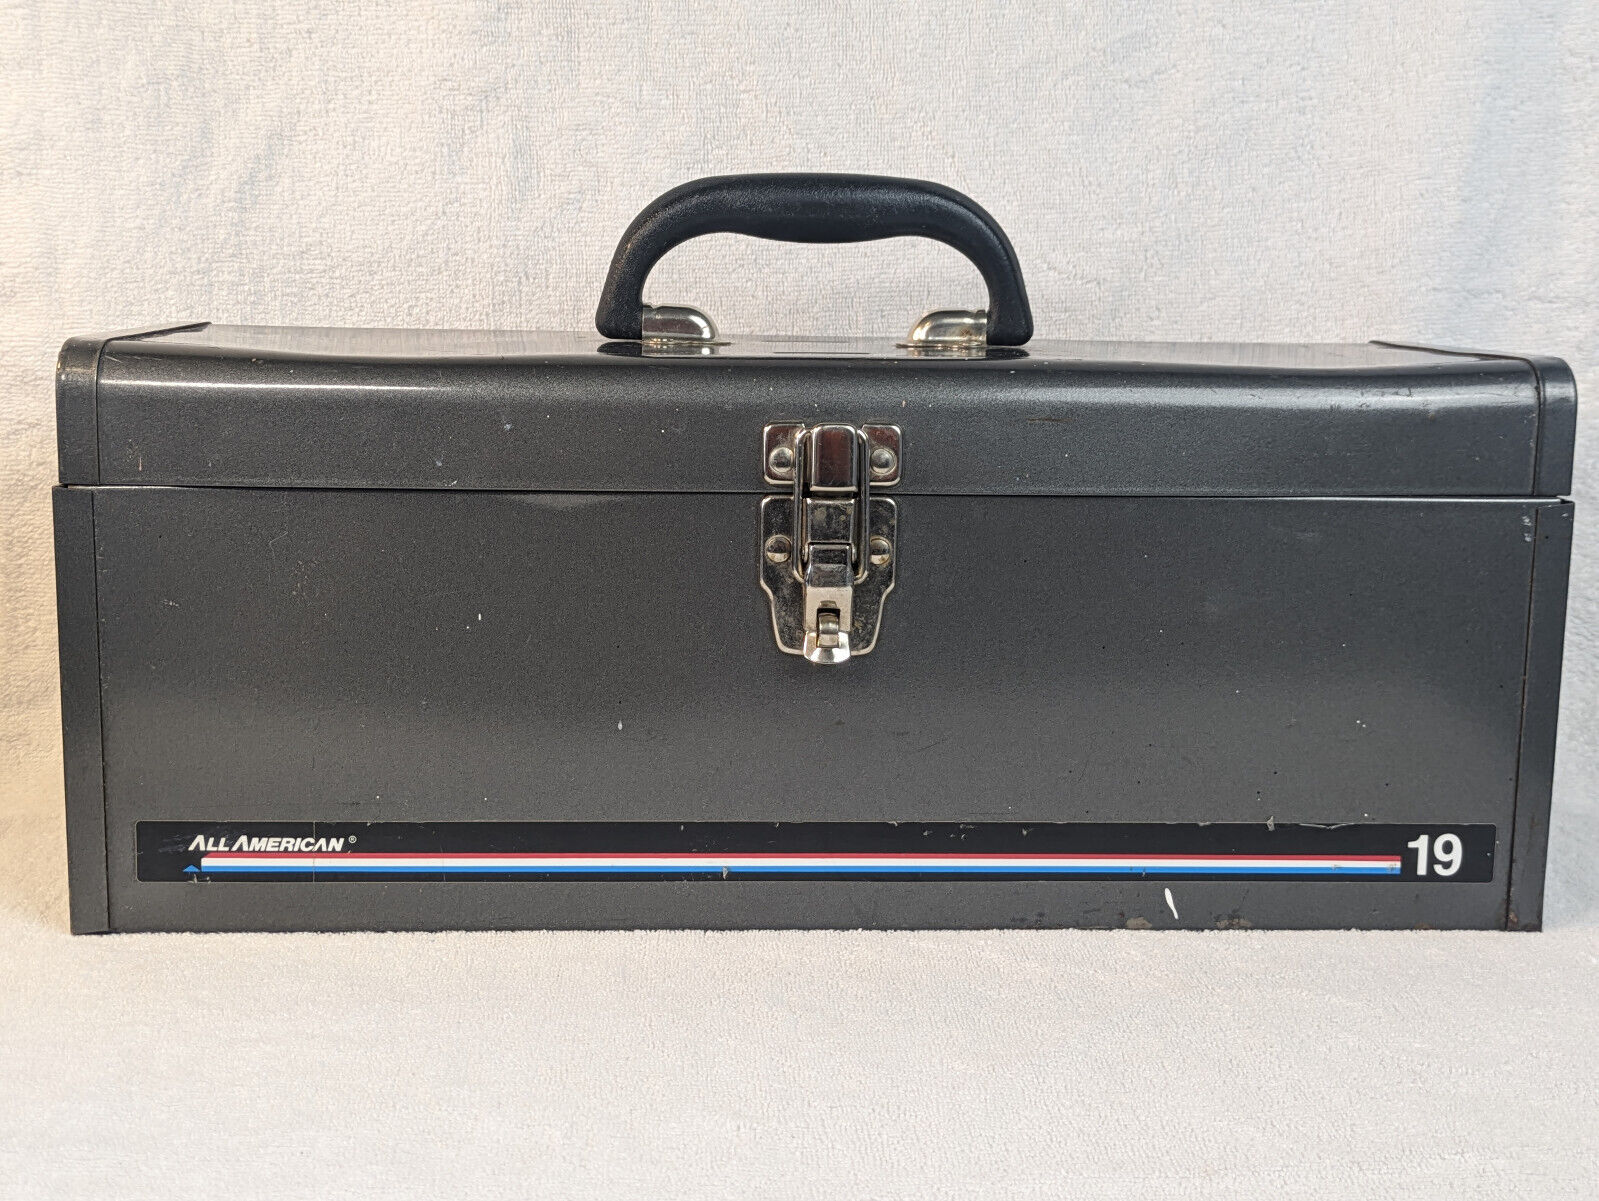 Vintage All American 19 Metal Toolbox, with Vanadium Screwdrivers